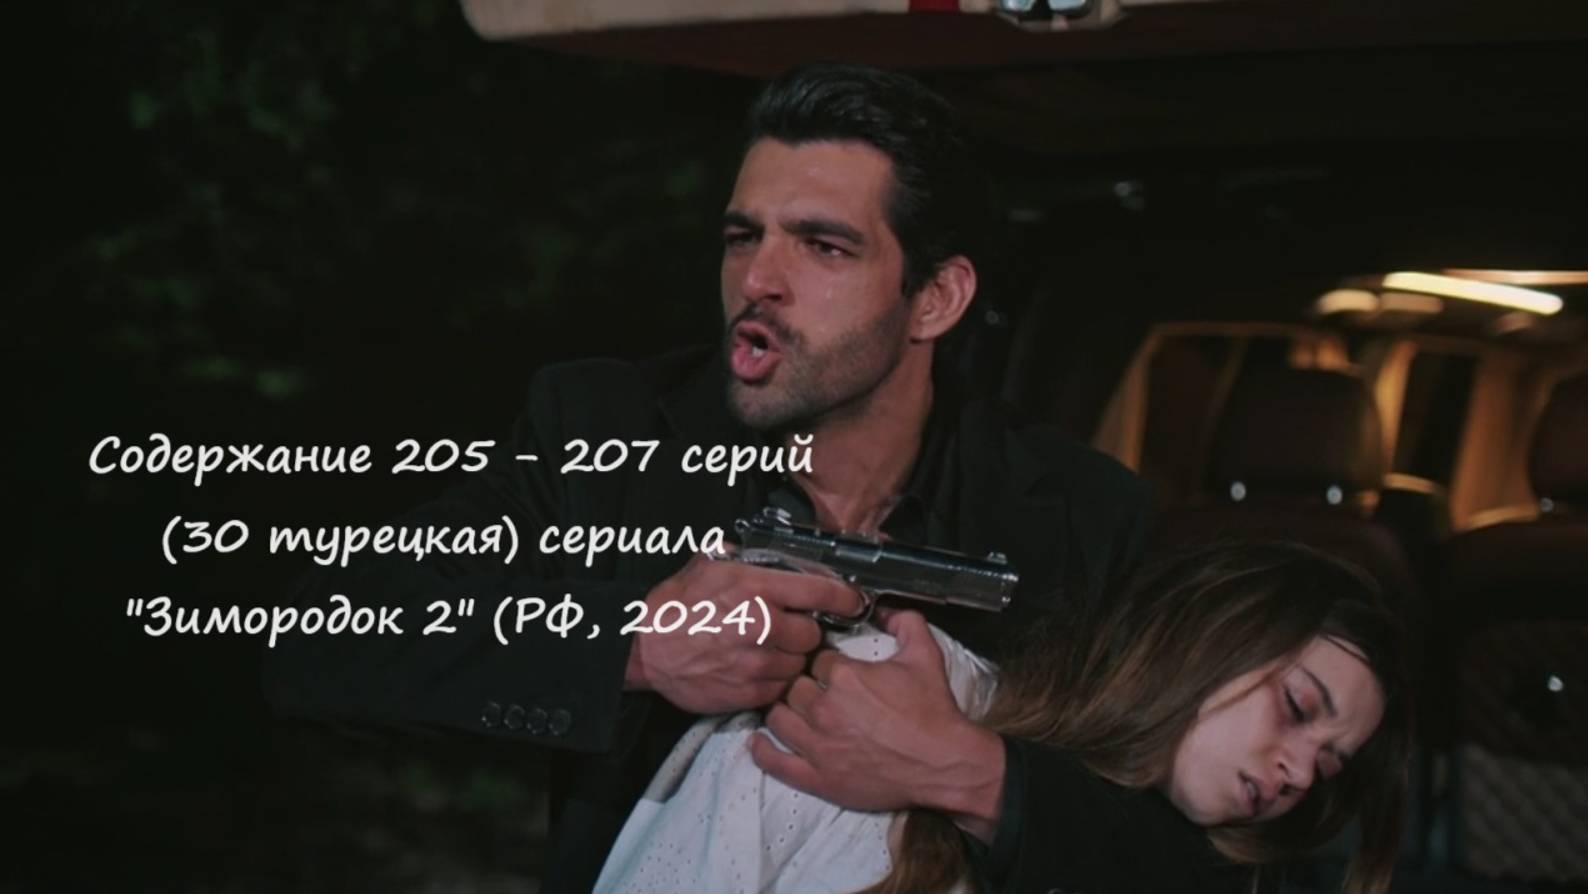 Содержание 205 - 207 серий (30 турецкая) второго сезона сериала "Зимородок" (РФ, 2023 / 2024)